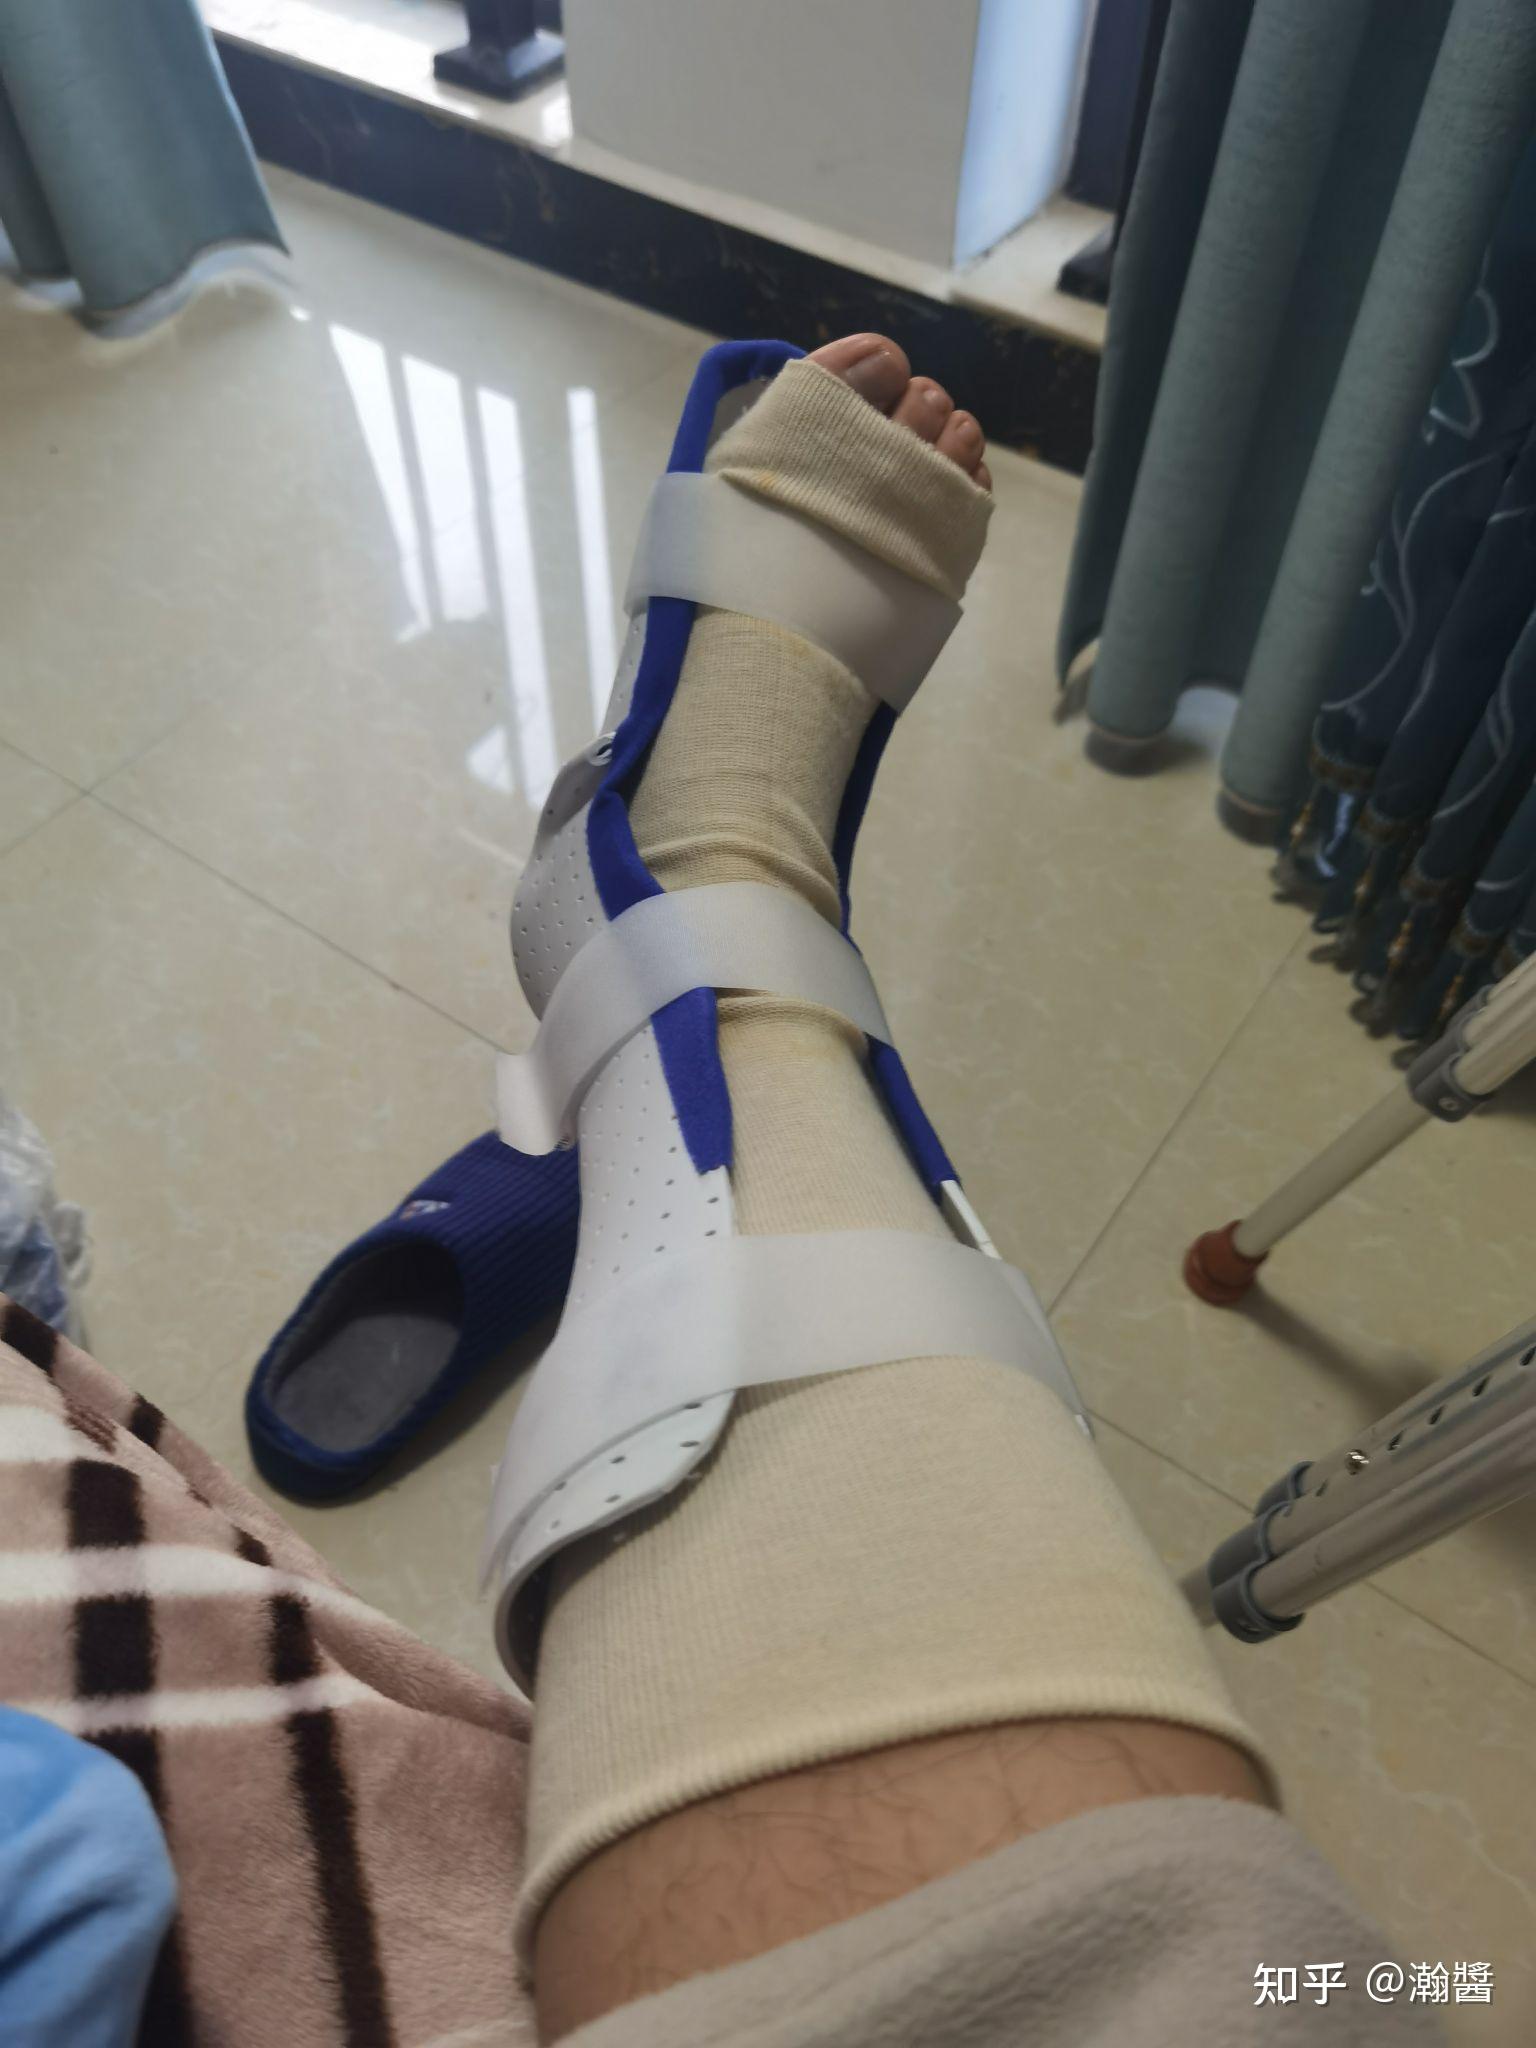 打篮球脚踝「撕脱性骨折+韧带断裂」 从受伤到康复日记 - 知乎